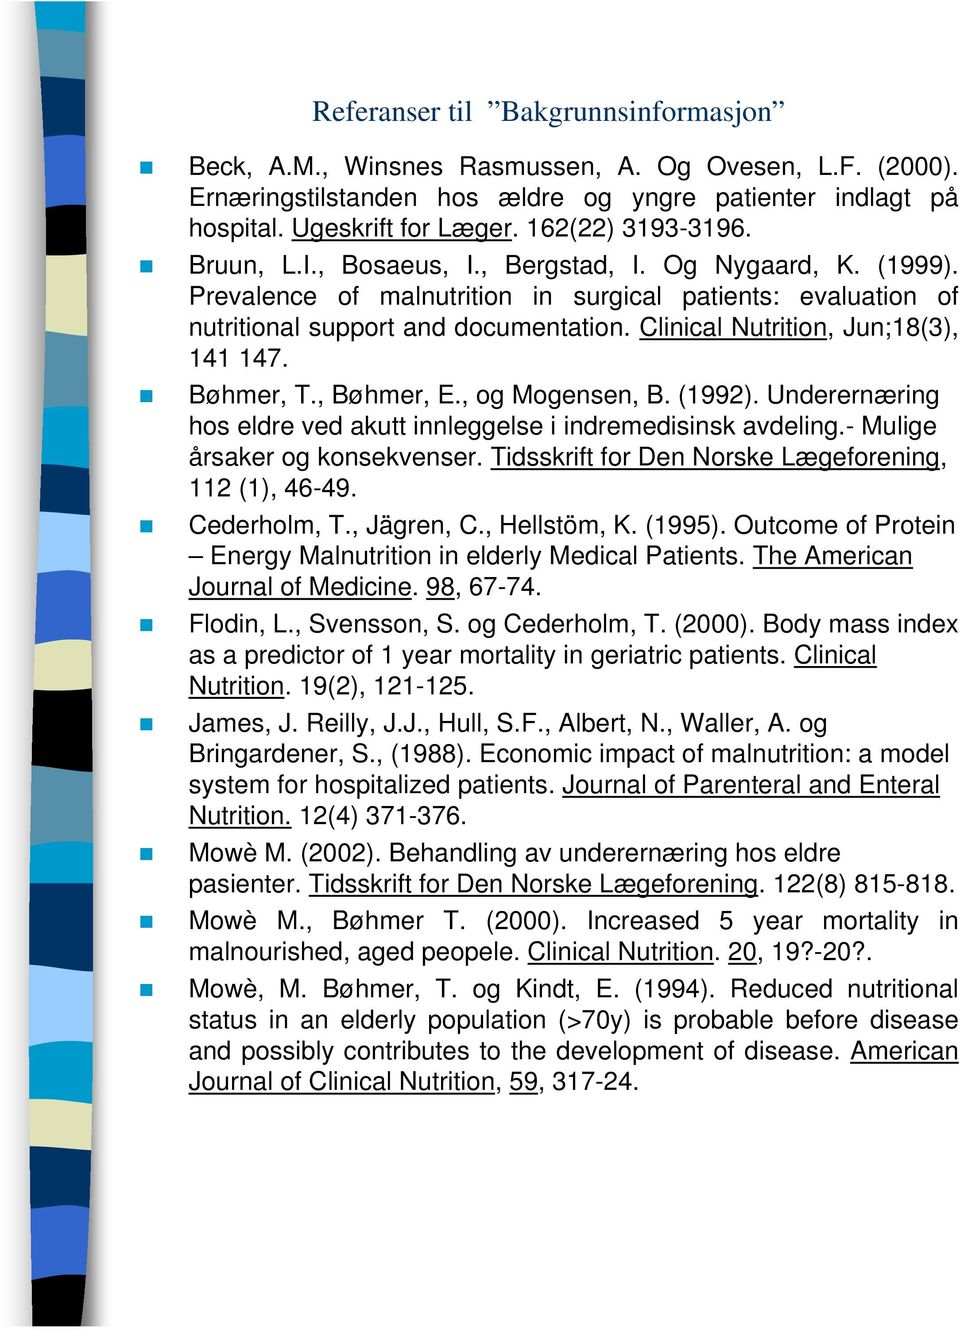 Clinical Nutrition, Jun;18(3), 141 147. Bøhmer, T., Bøhmer, E., og Mogensen, B. (1992). Underernæring hos eldre ved akutt innleggelse i indremedisinsk avdeling.- Mulige årsaker og konsekvenser.